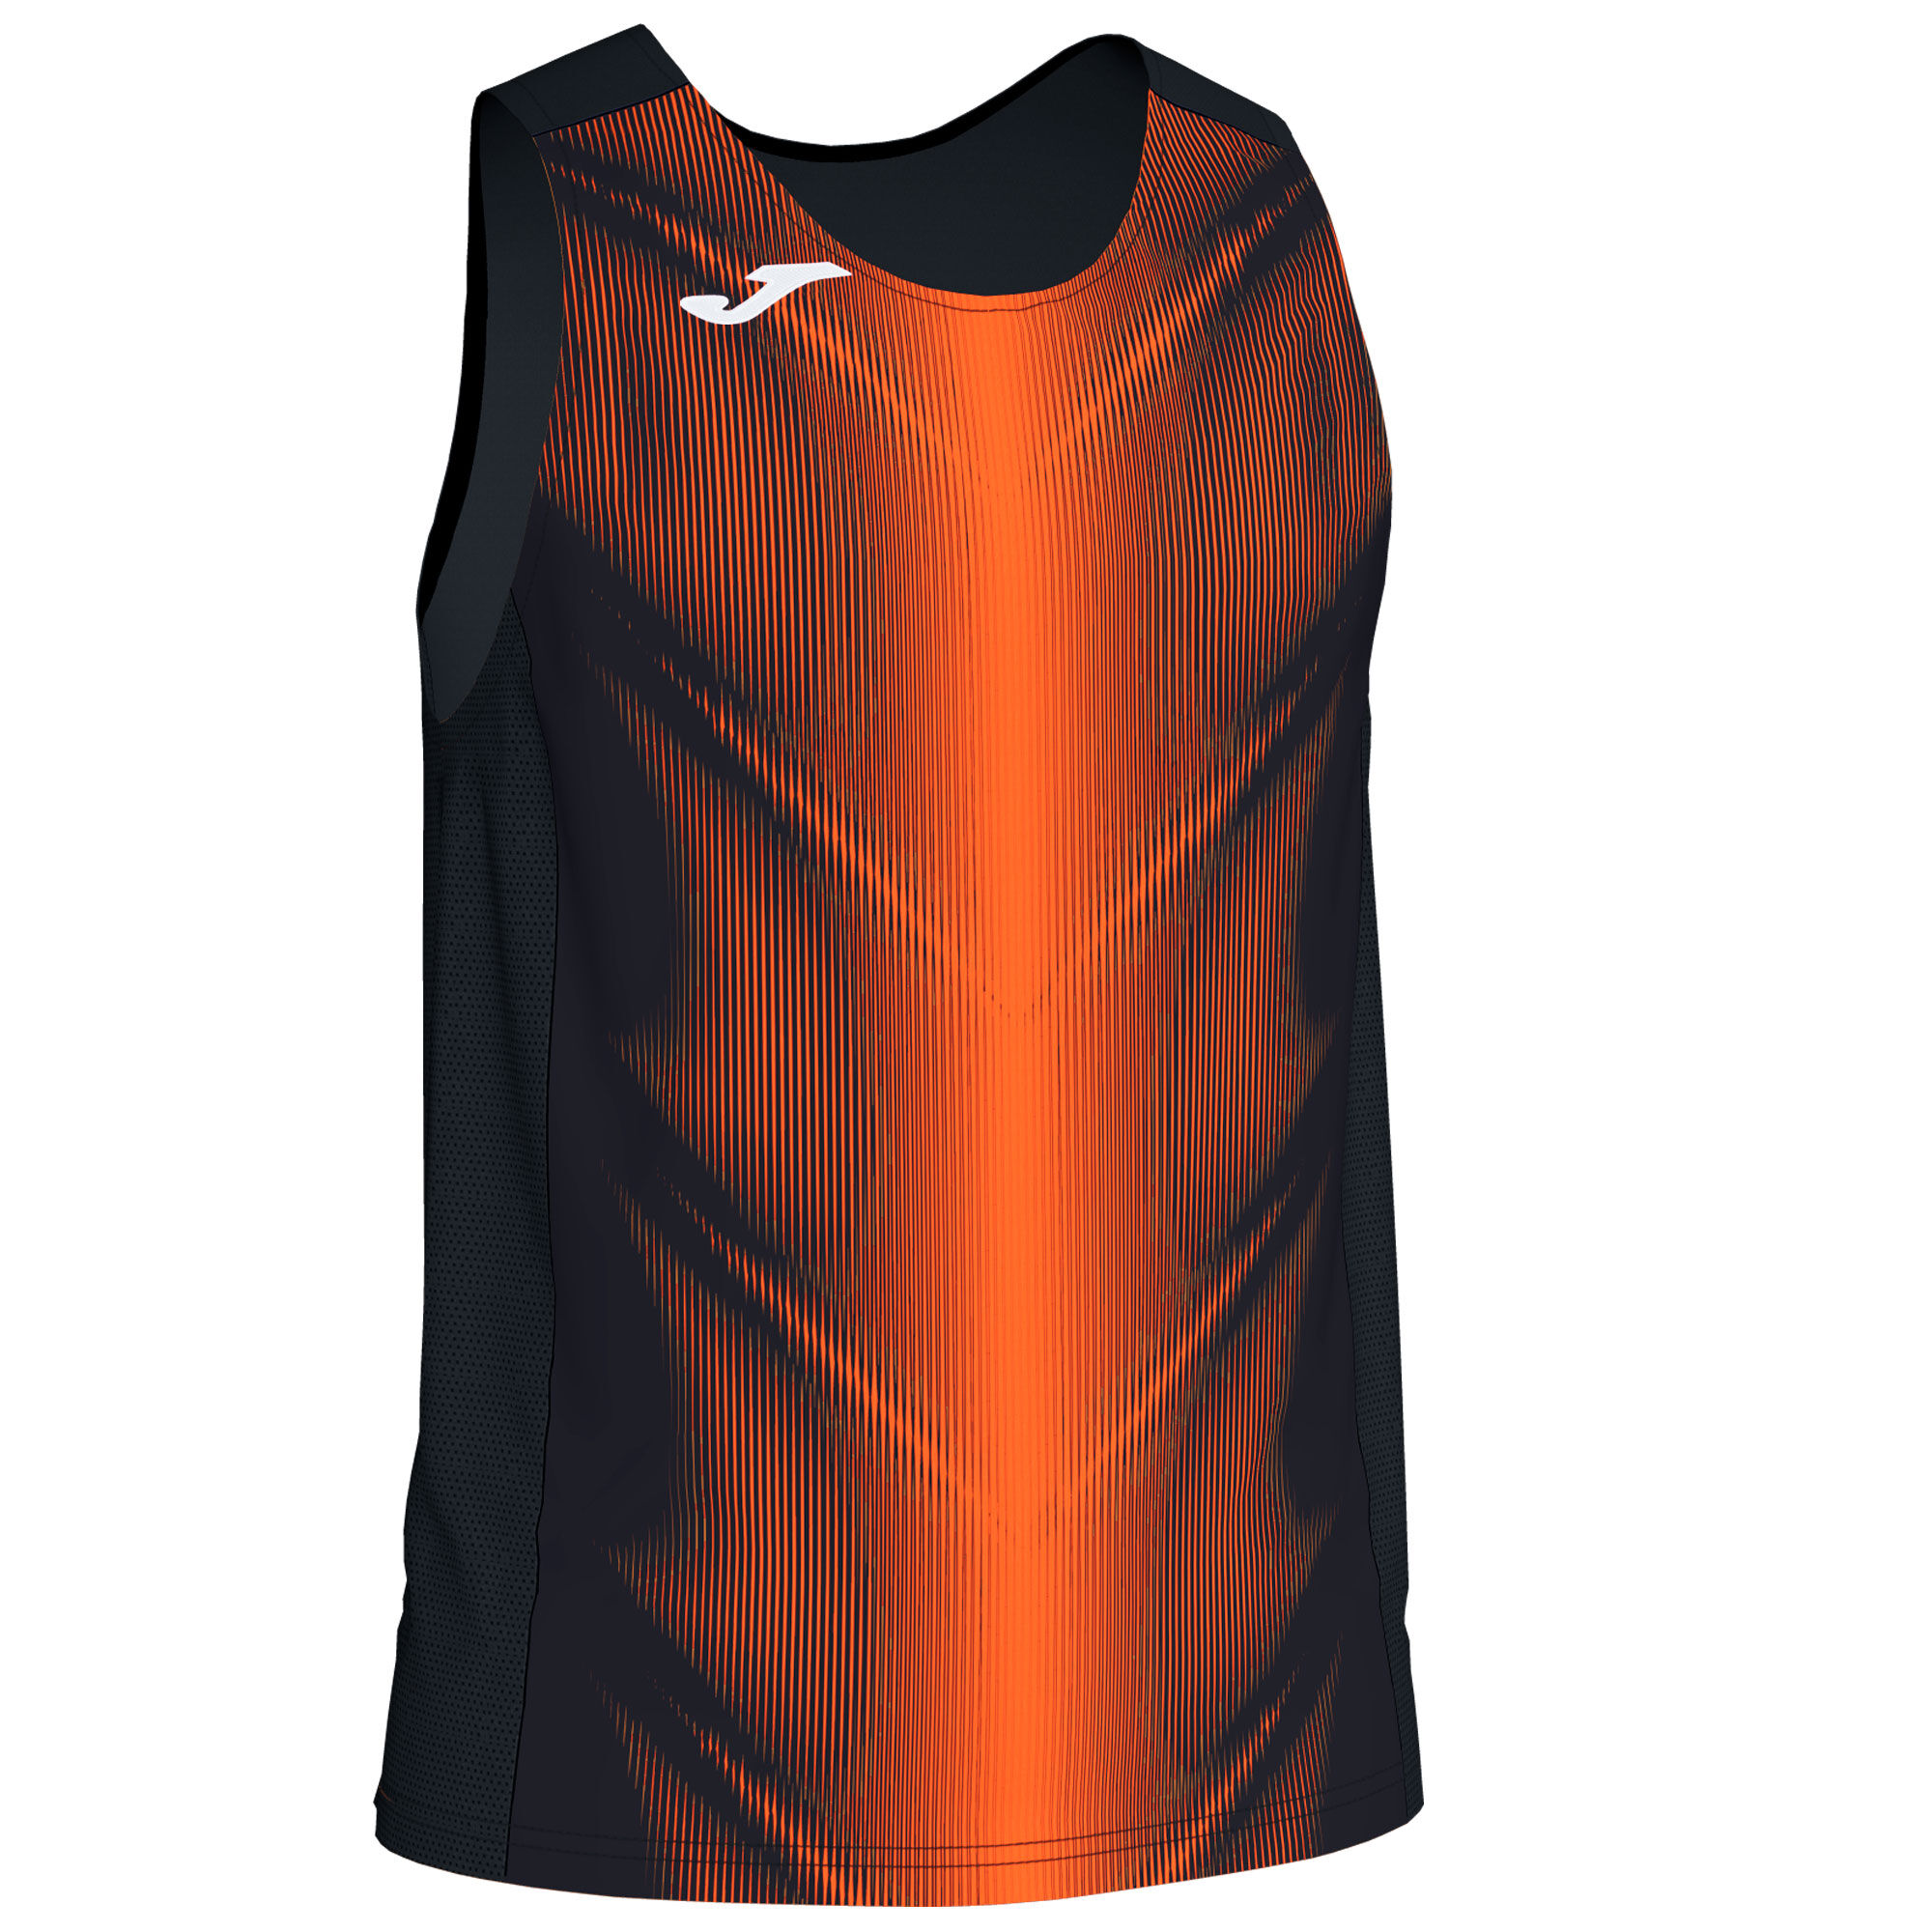 Sleeveless t-shirt man Olimpia black orange